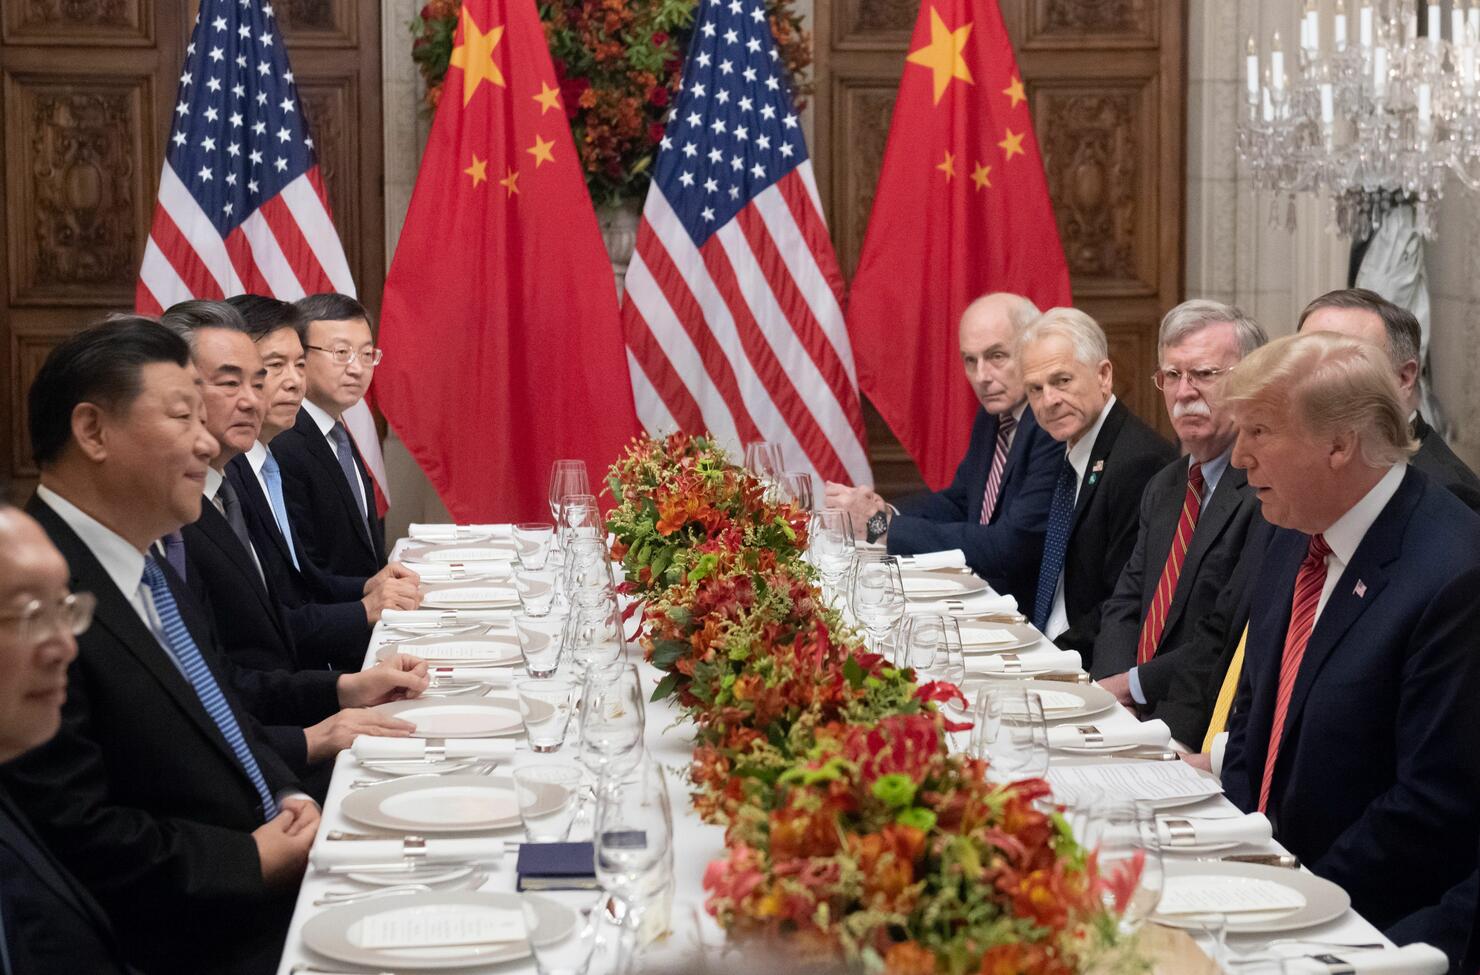 Donald Trump and Xi Jinping meet over tariffs